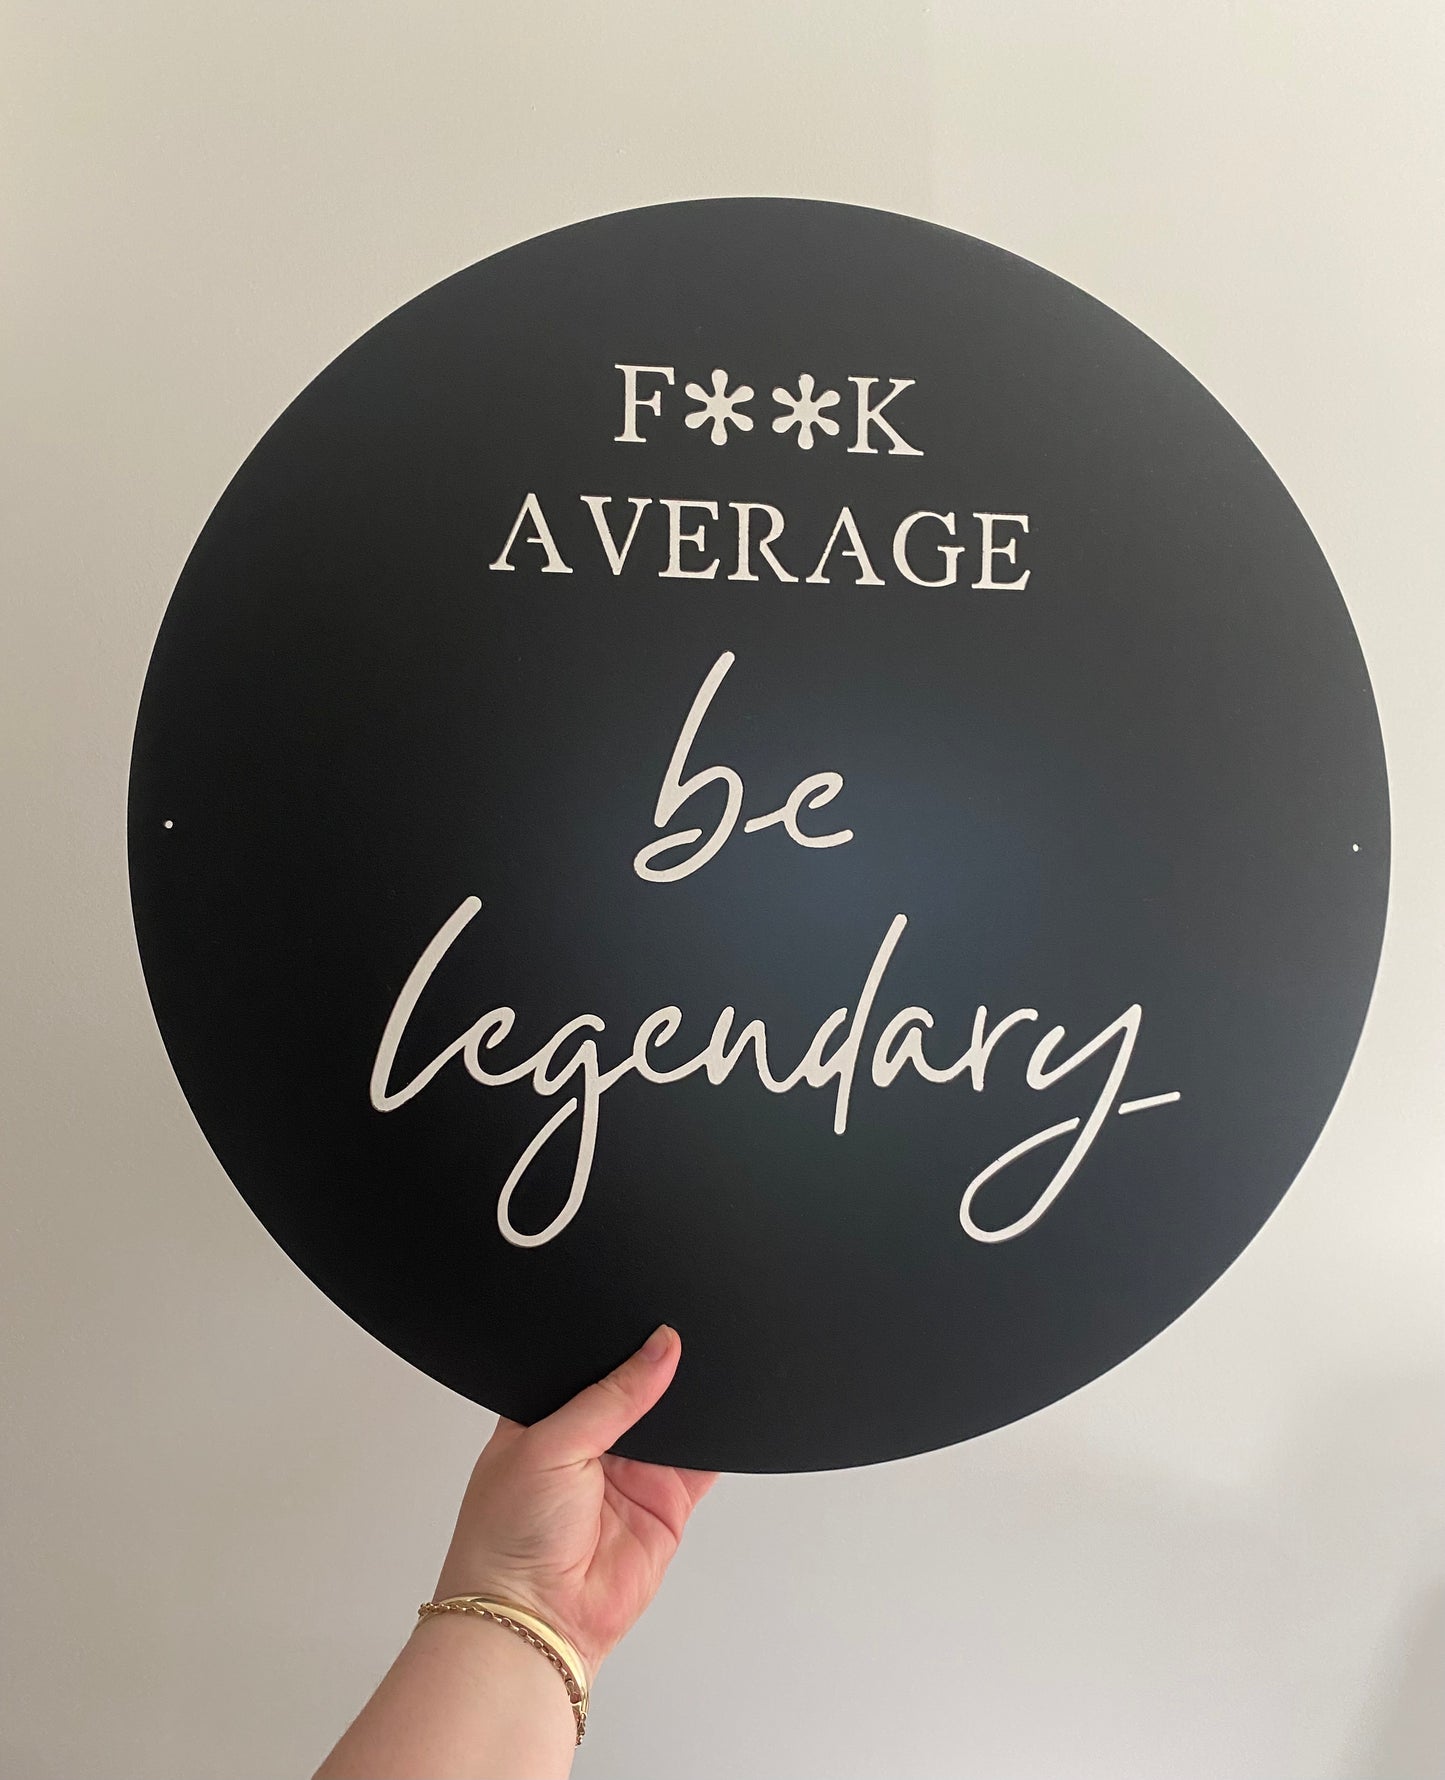 F**K average, be legendary